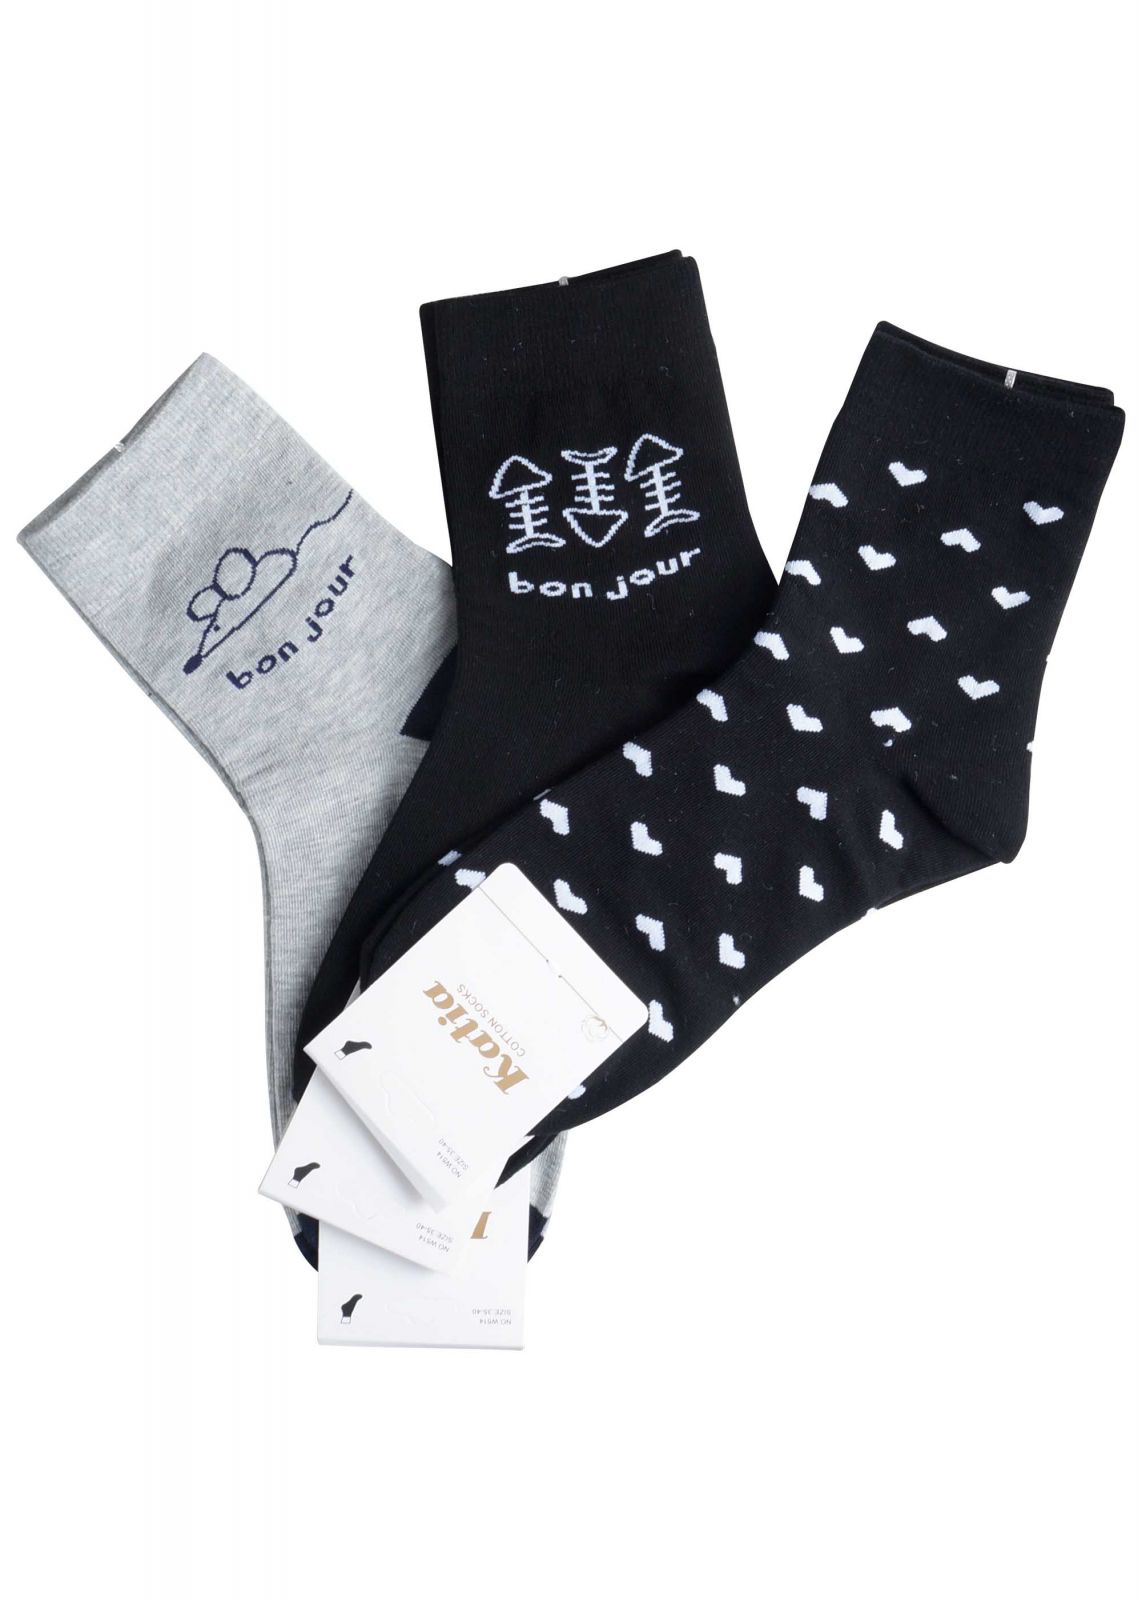 Γυναικεία κάλτσα logo bonjour. Συσκευασία 3pack ΜΑΥΡΟ ΓΚΡΙ